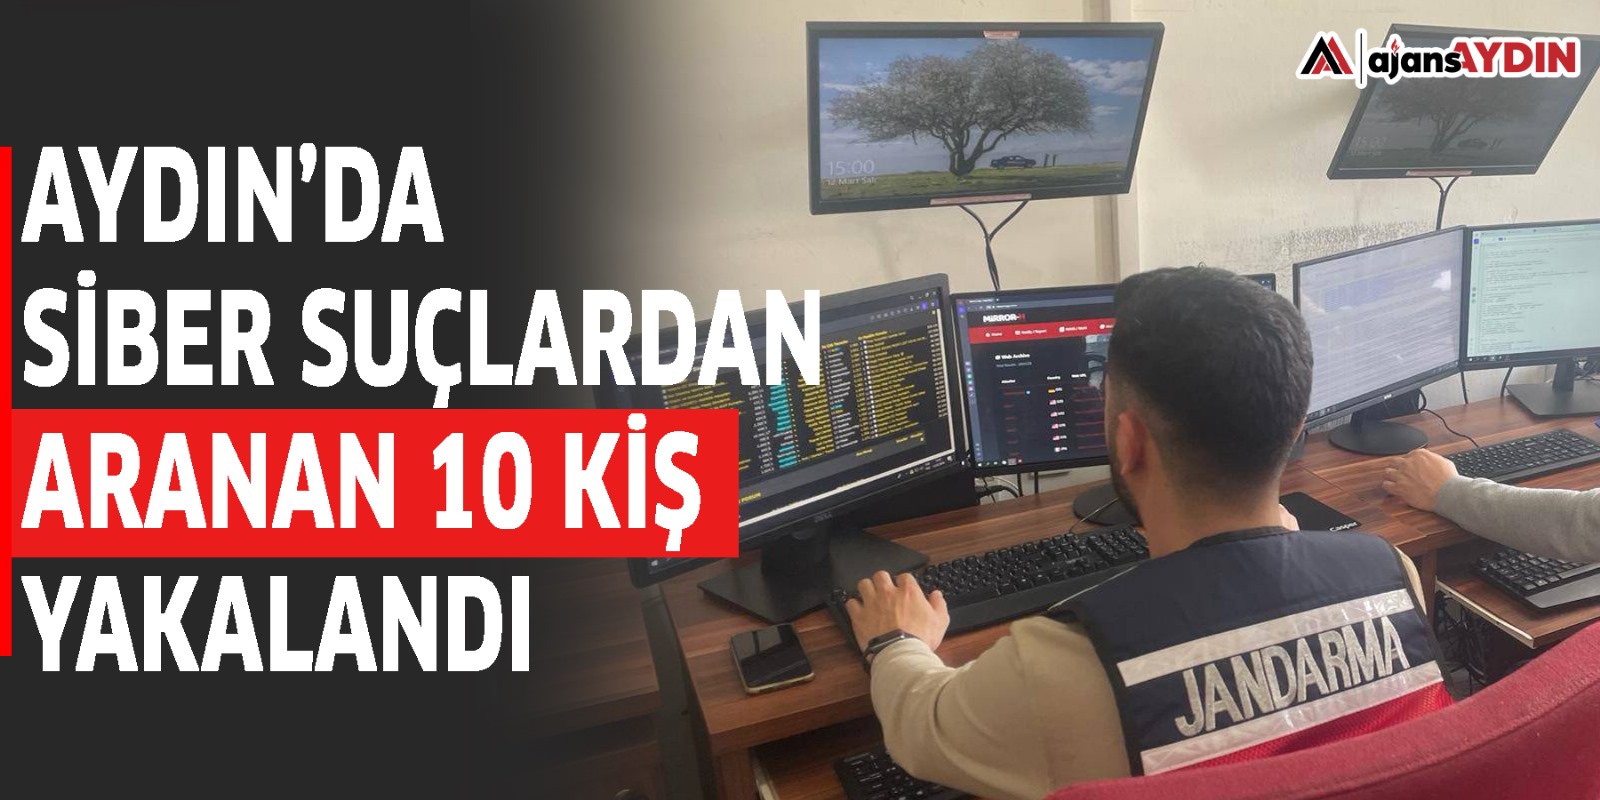 Aydın’da siber suçlardan aranan 10 kişi yakalandı